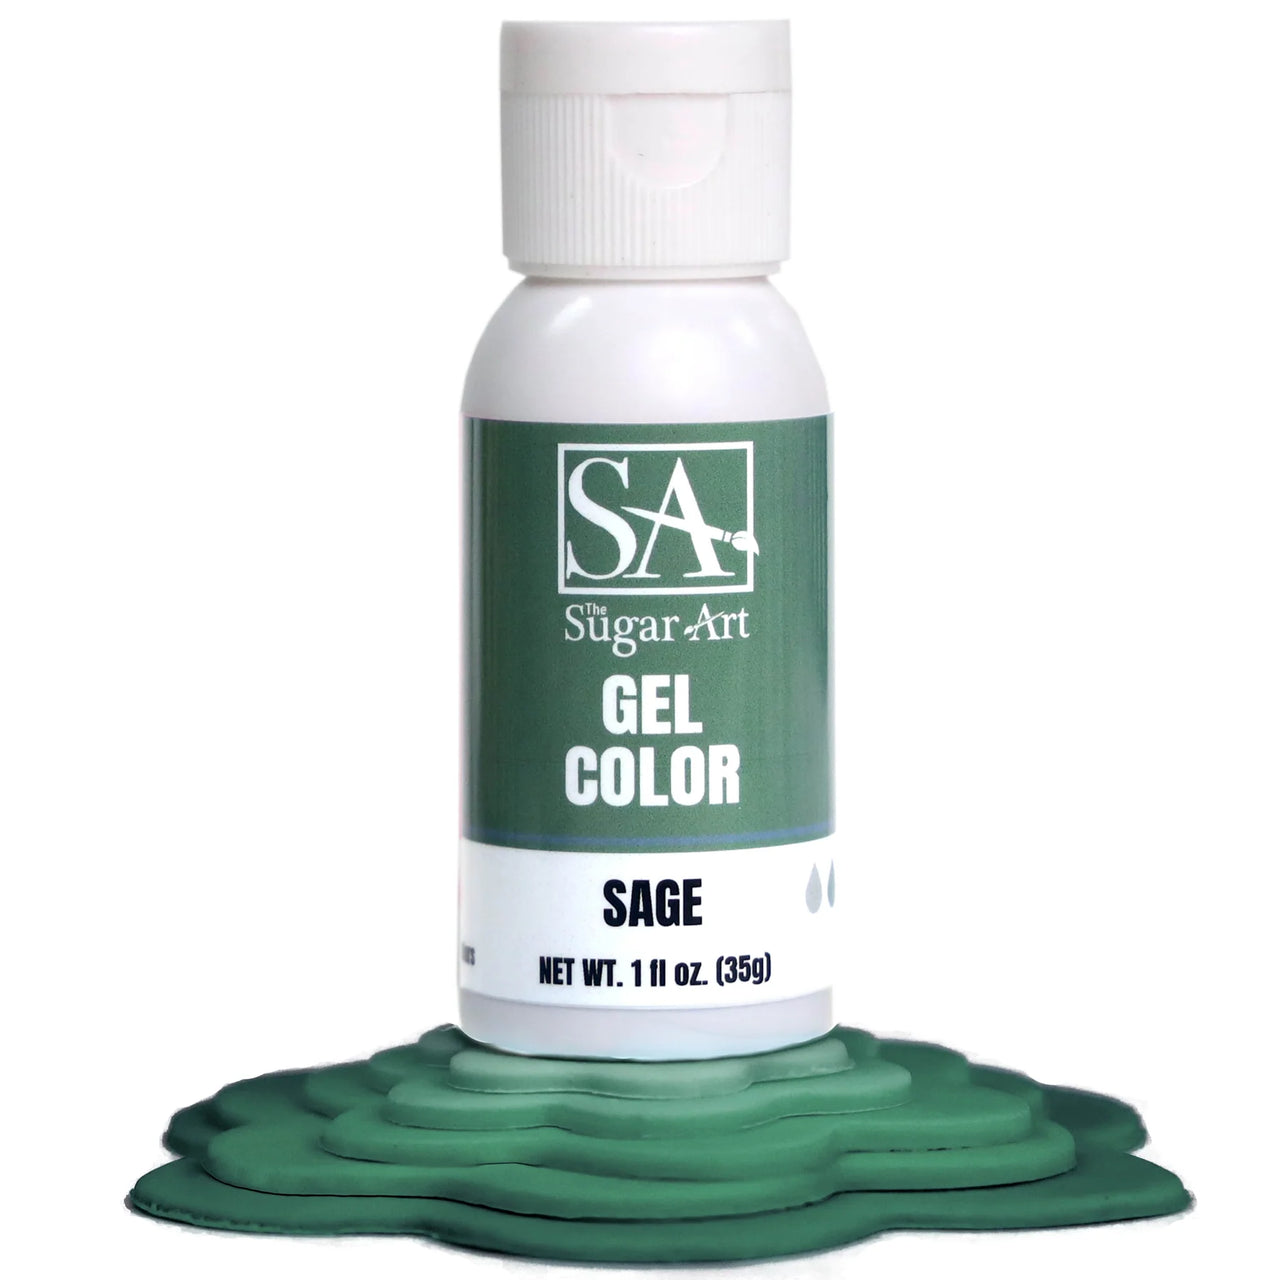 Sage Gel Color 1oz (35g)